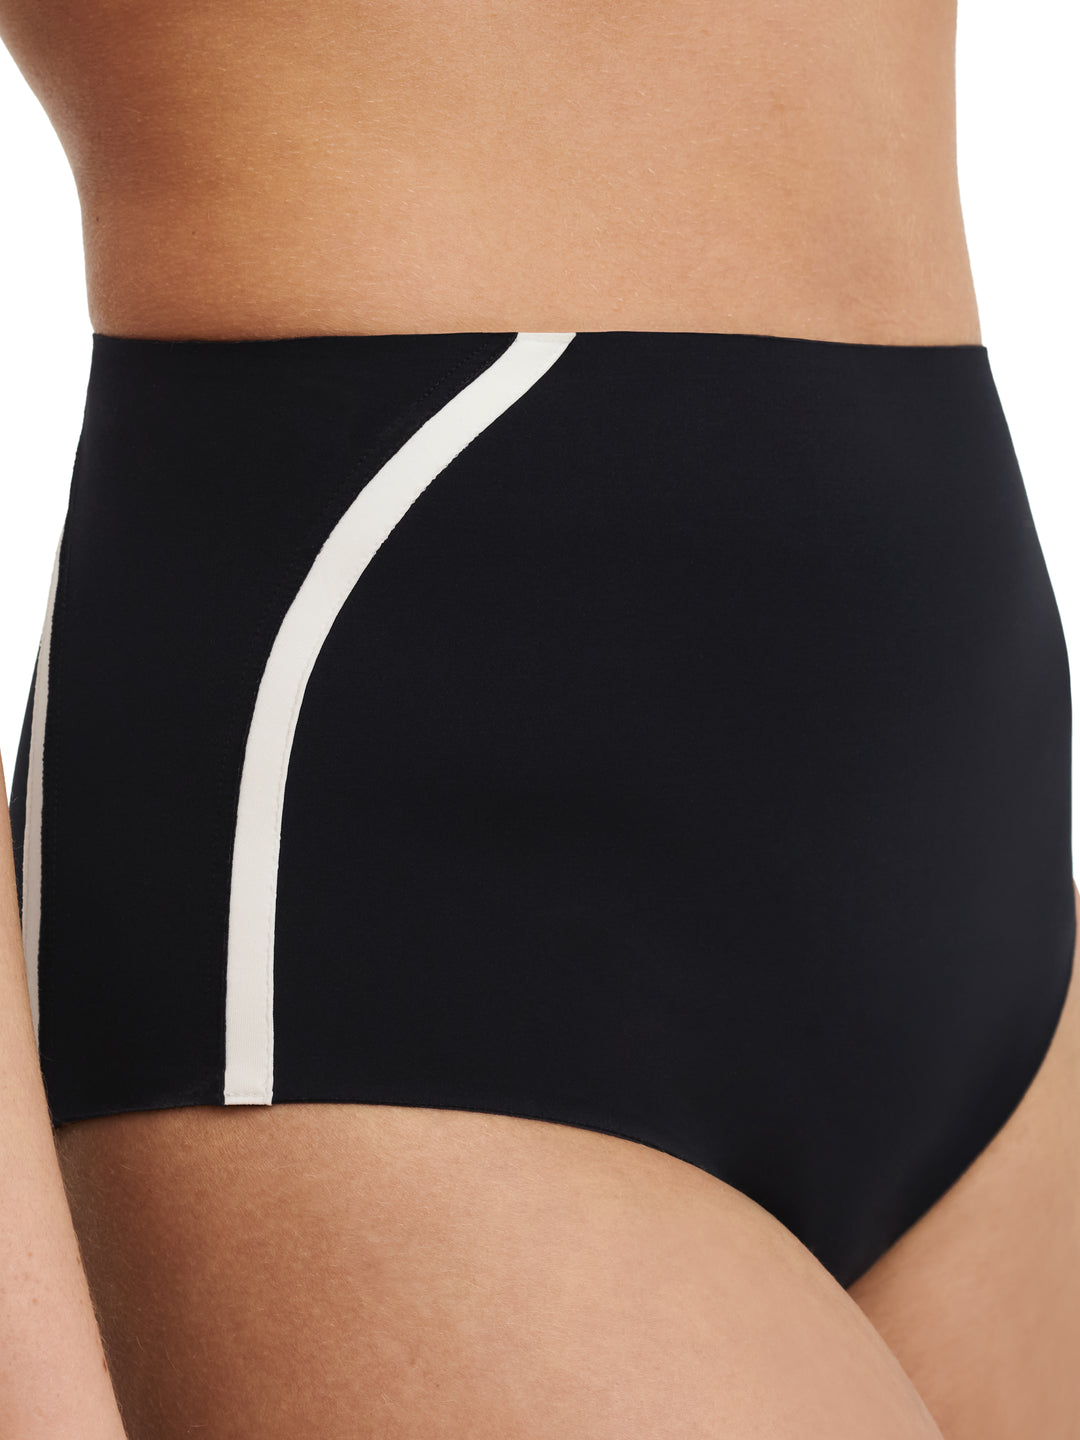 Chantelle 泳装 - 正品全套比基尼三角裤（形状）黑色/白色